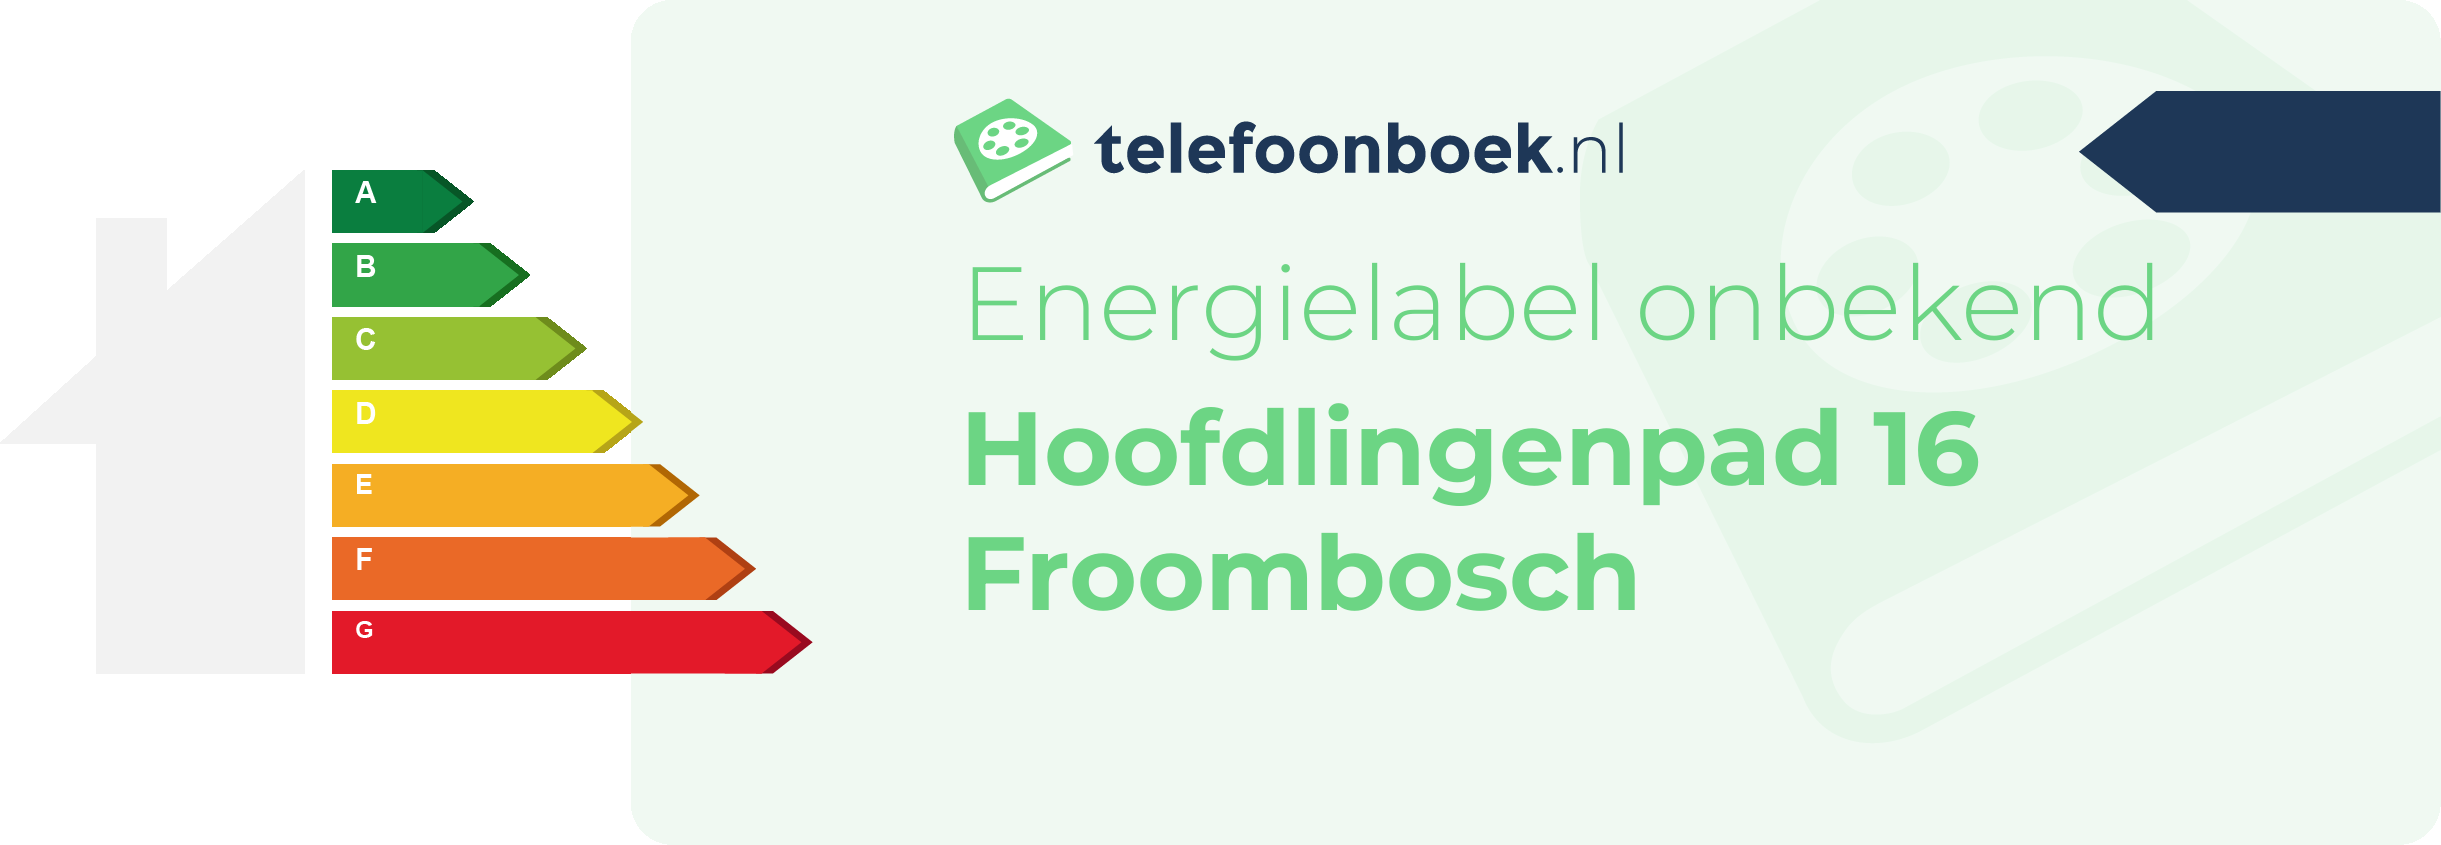 Energielabel Hoofdlingenpad 16 Froombosch